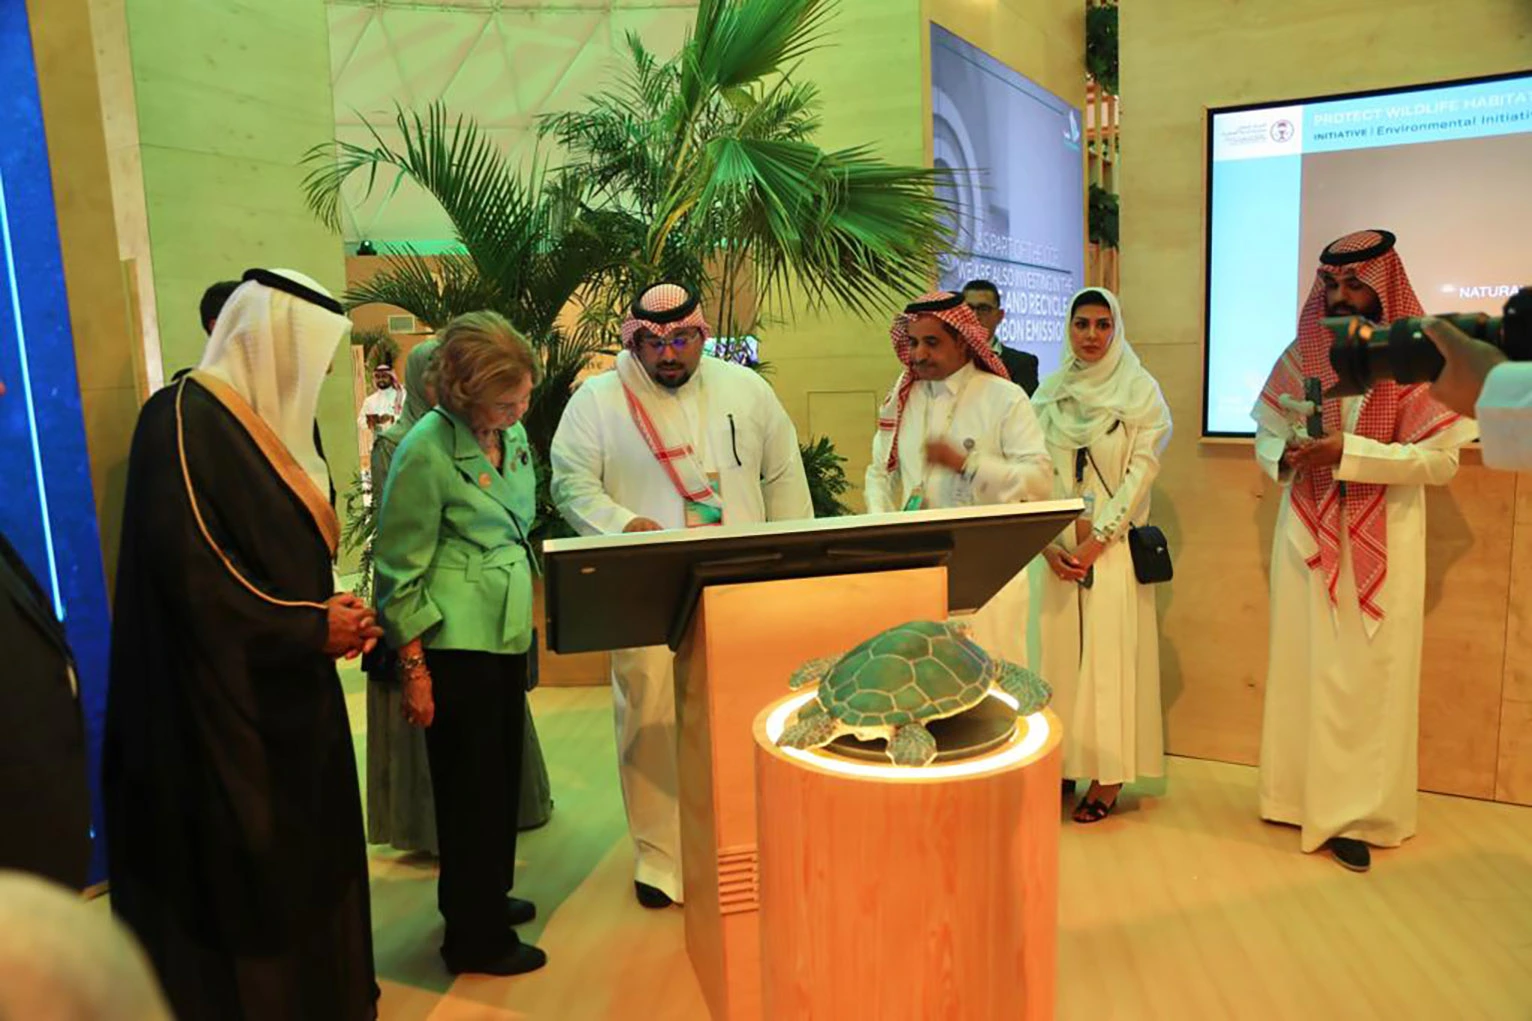 جناح المركز الوطني لتنمية الحياة الفطرية في منتدى مبادرات السعودية الخضراء